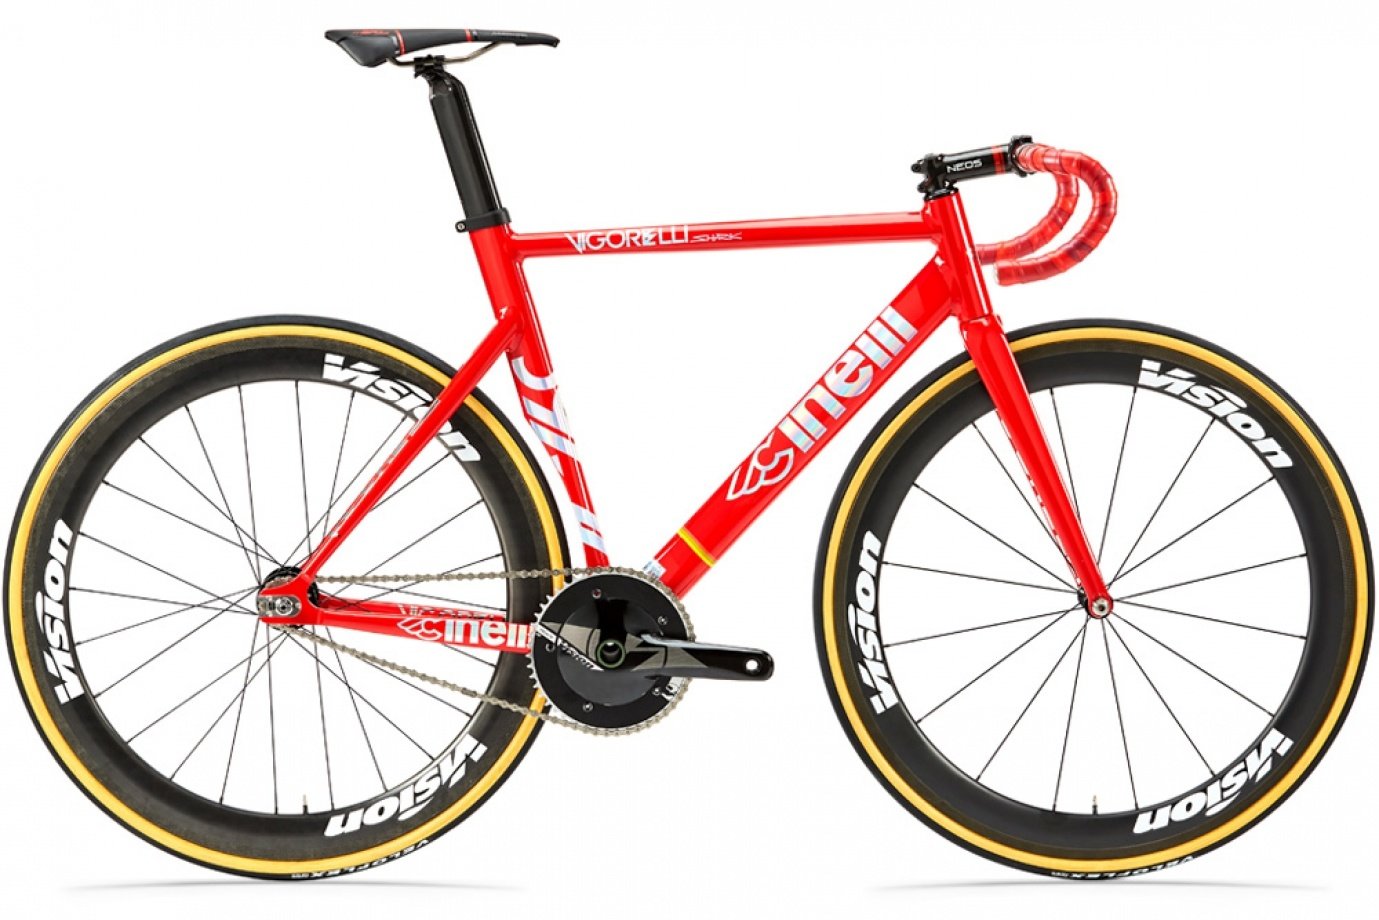 Червен спортен аеродинамичен едноскоростен велосипед от Cinelli с една скорост, спортно седло и извито спортно кормило.